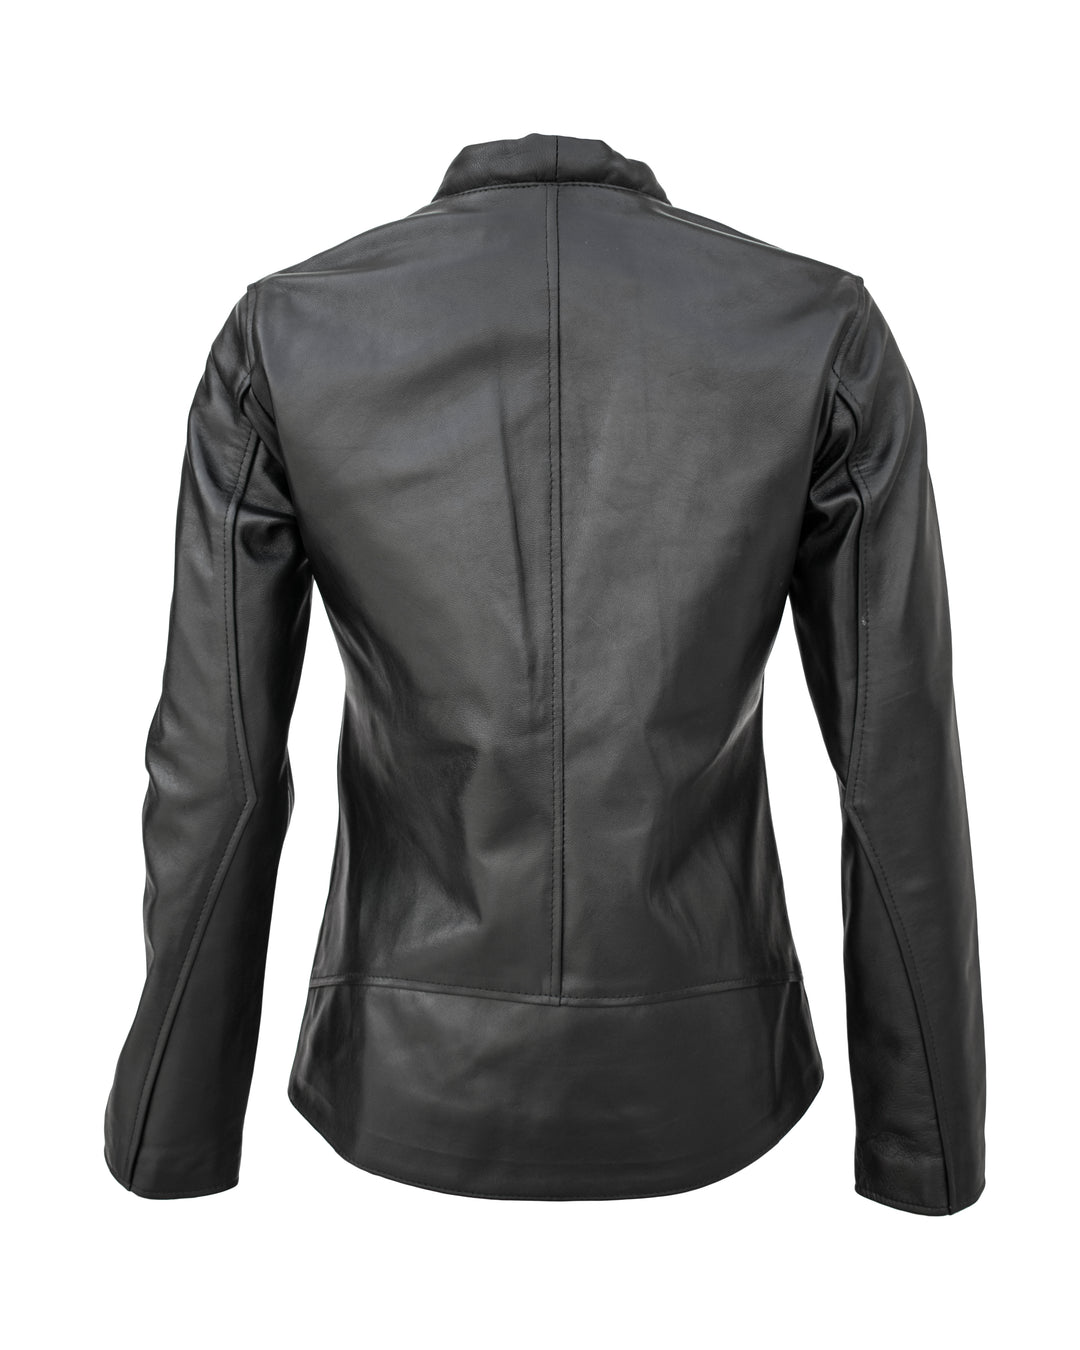 Lambskin Leather Jacket For Women